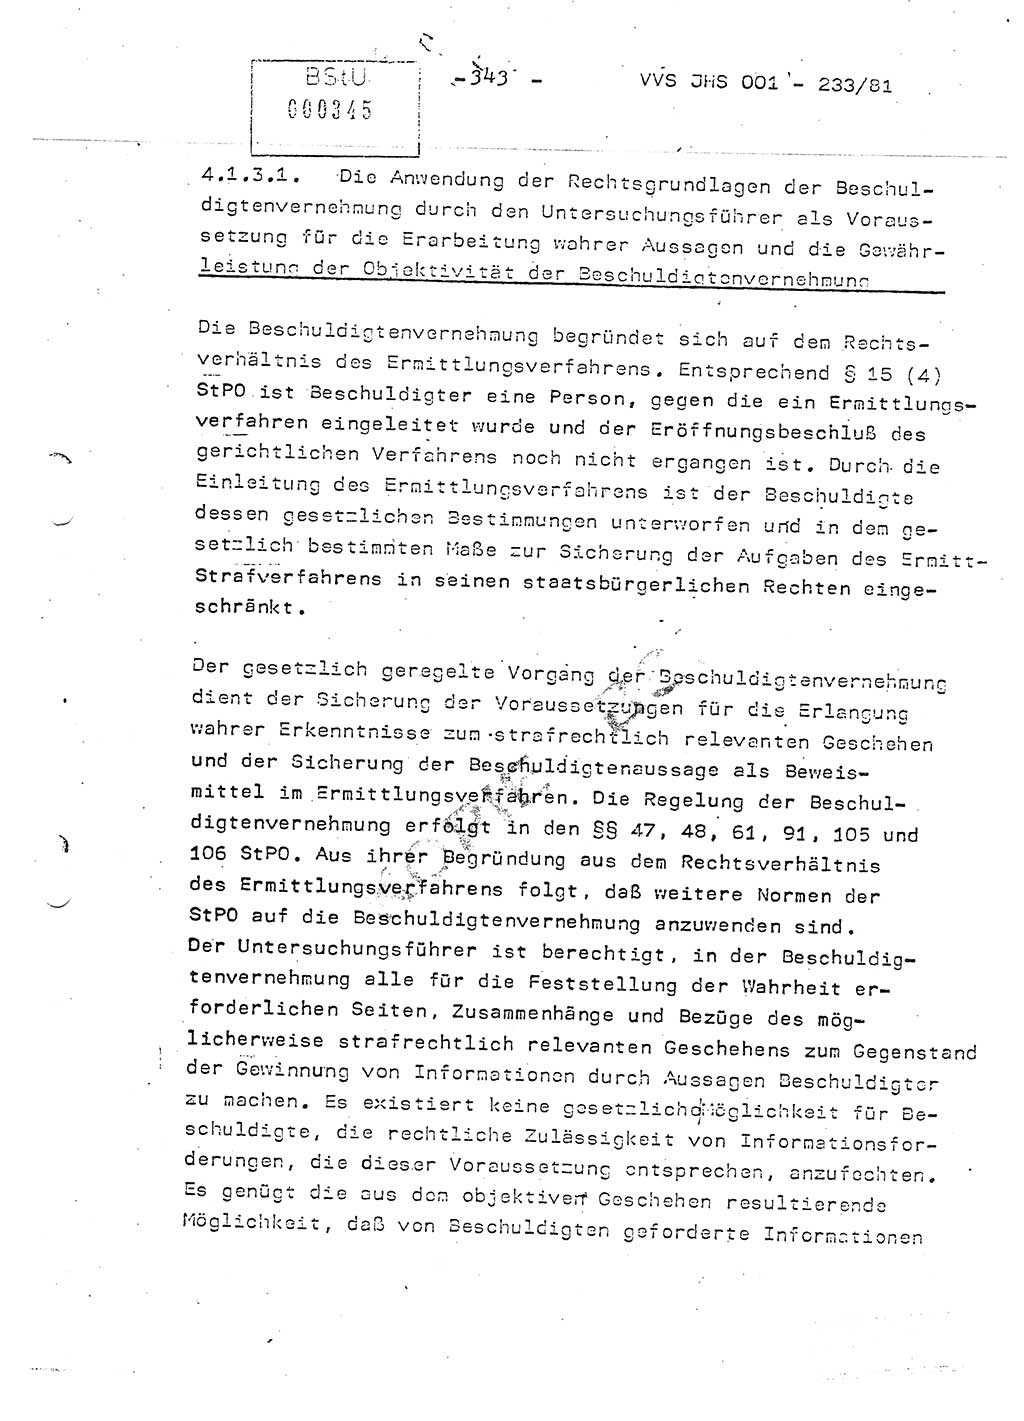 Dissertation Oberstleutnant Horst Zank (JHS), Oberstleutnant Dr. Karl-Heinz Knoblauch (JHS), Oberstleutnant Gustav-Adolf Kowalewski (HA Ⅸ), Oberstleutnant Wolfgang Plötner (HA Ⅸ), Ministerium für Staatssicherheit (MfS) [Deutsche Demokratische Republik (DDR)], Juristische Hochschule (JHS), Vertrauliche Verschlußsache (VVS) o001-233/81, Potsdam 1981, Blatt 343 (Diss. MfS DDR JHS VVS o001-233/81 1981, Bl. 343)